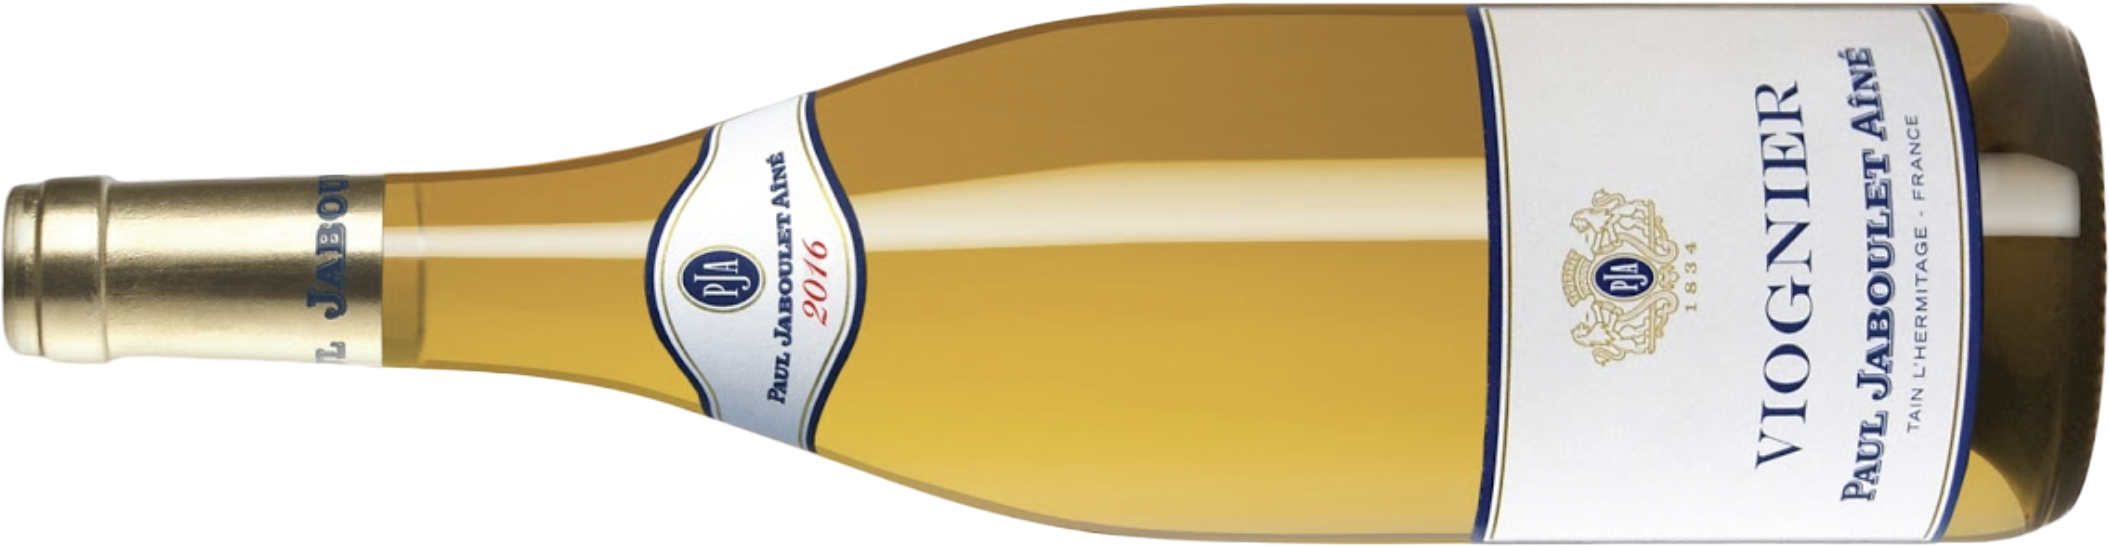 2016 Paul Jaboulet Aîné VDF Viognier Bottle